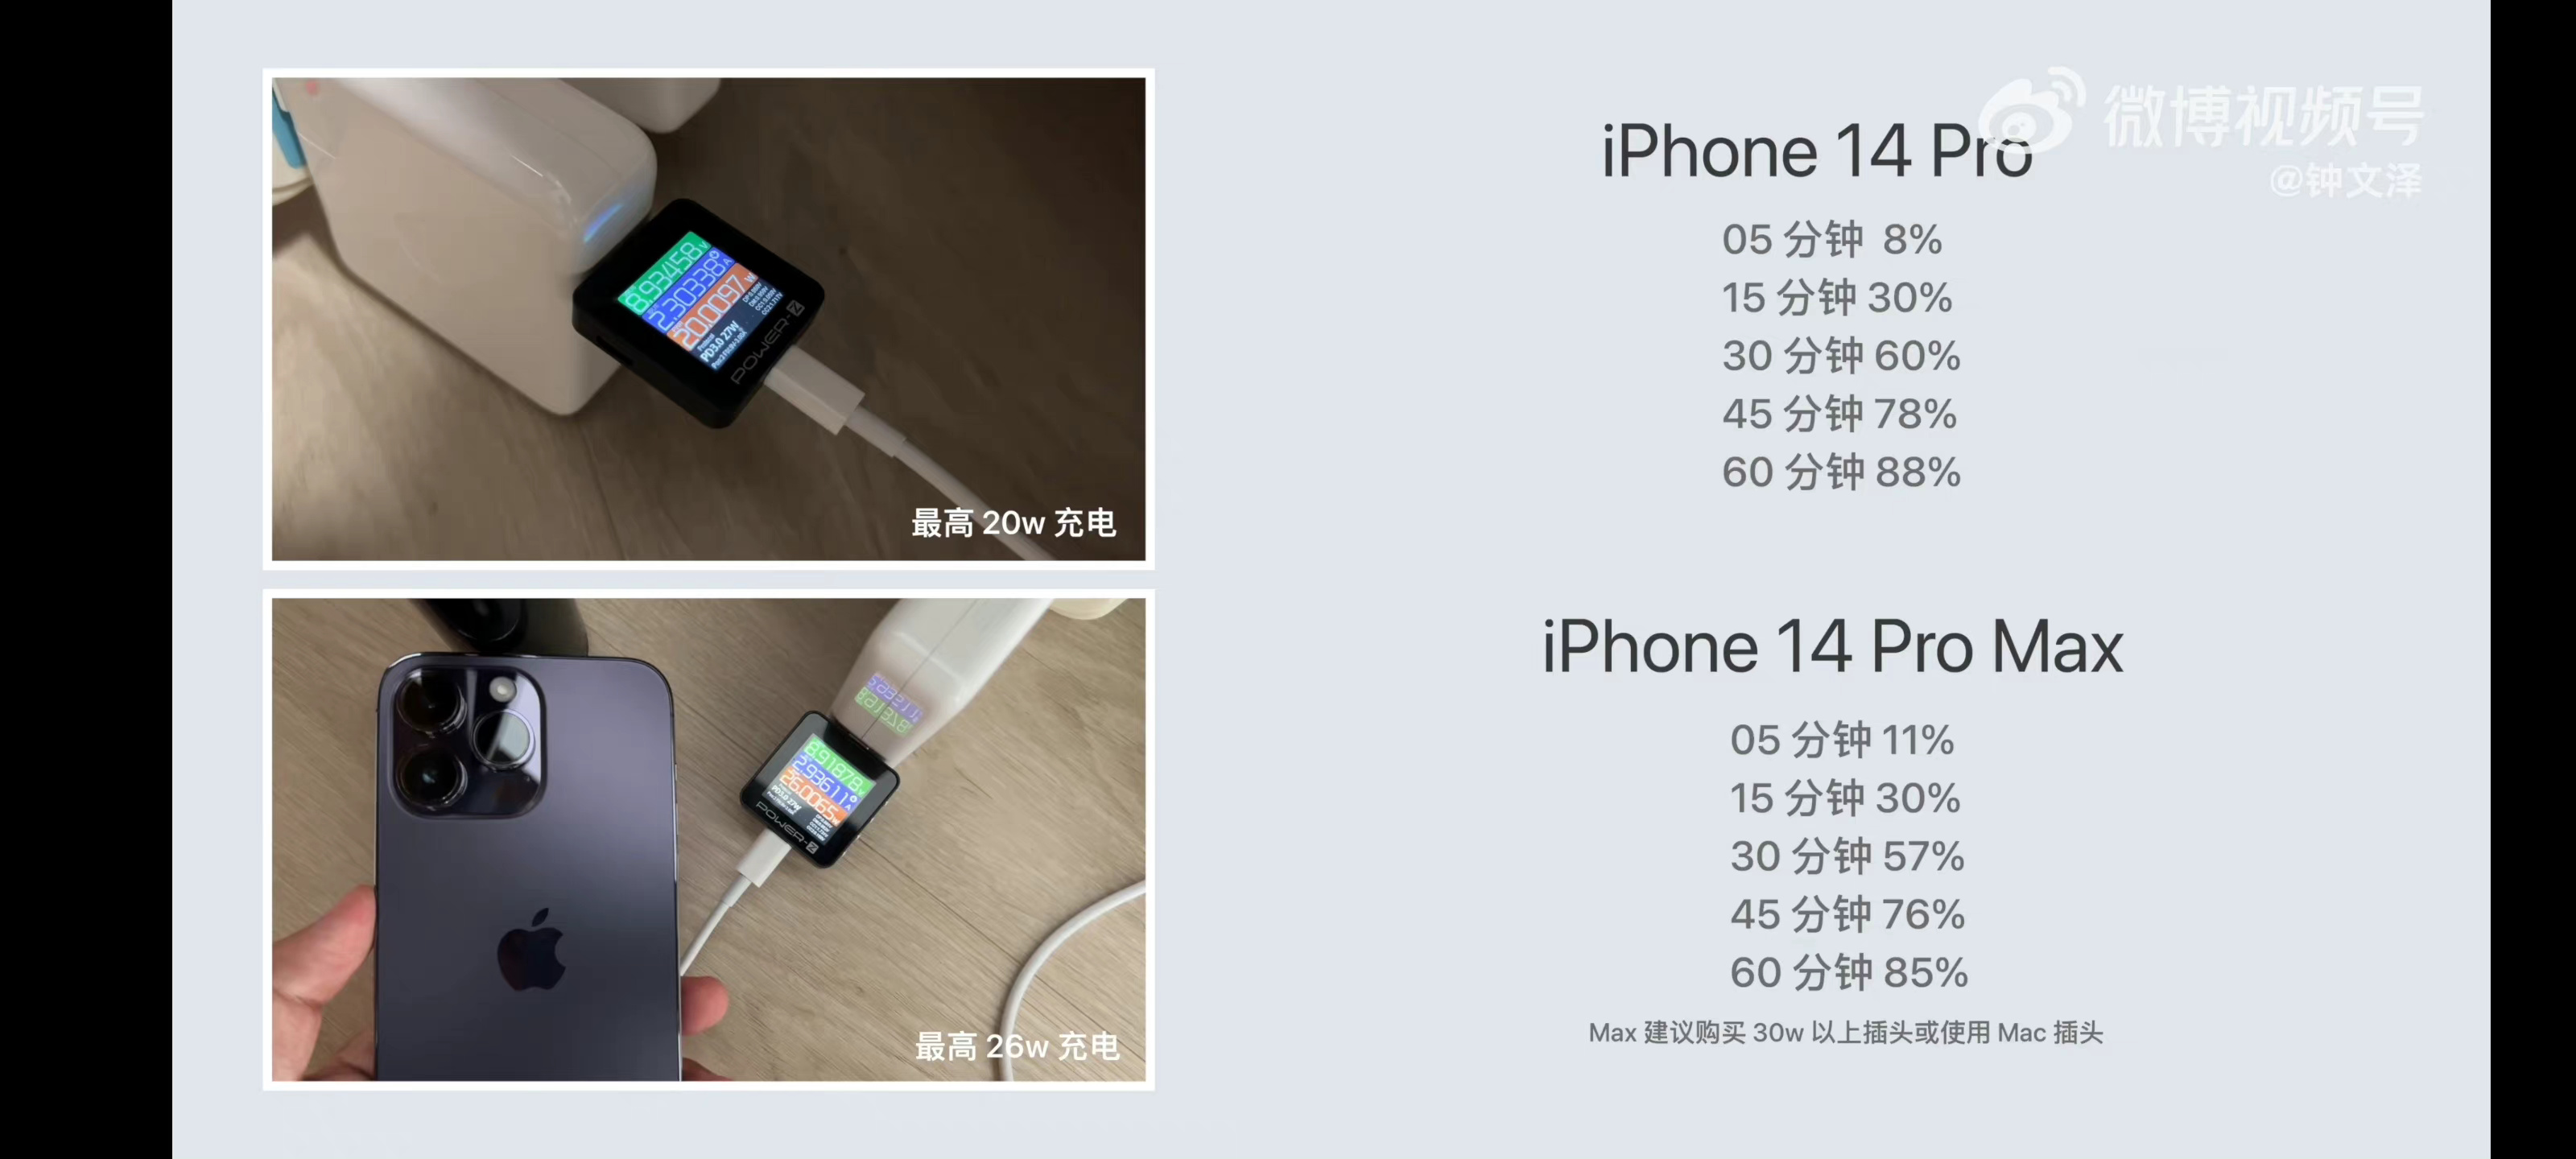 Iphone 14 Pro Max зарядка